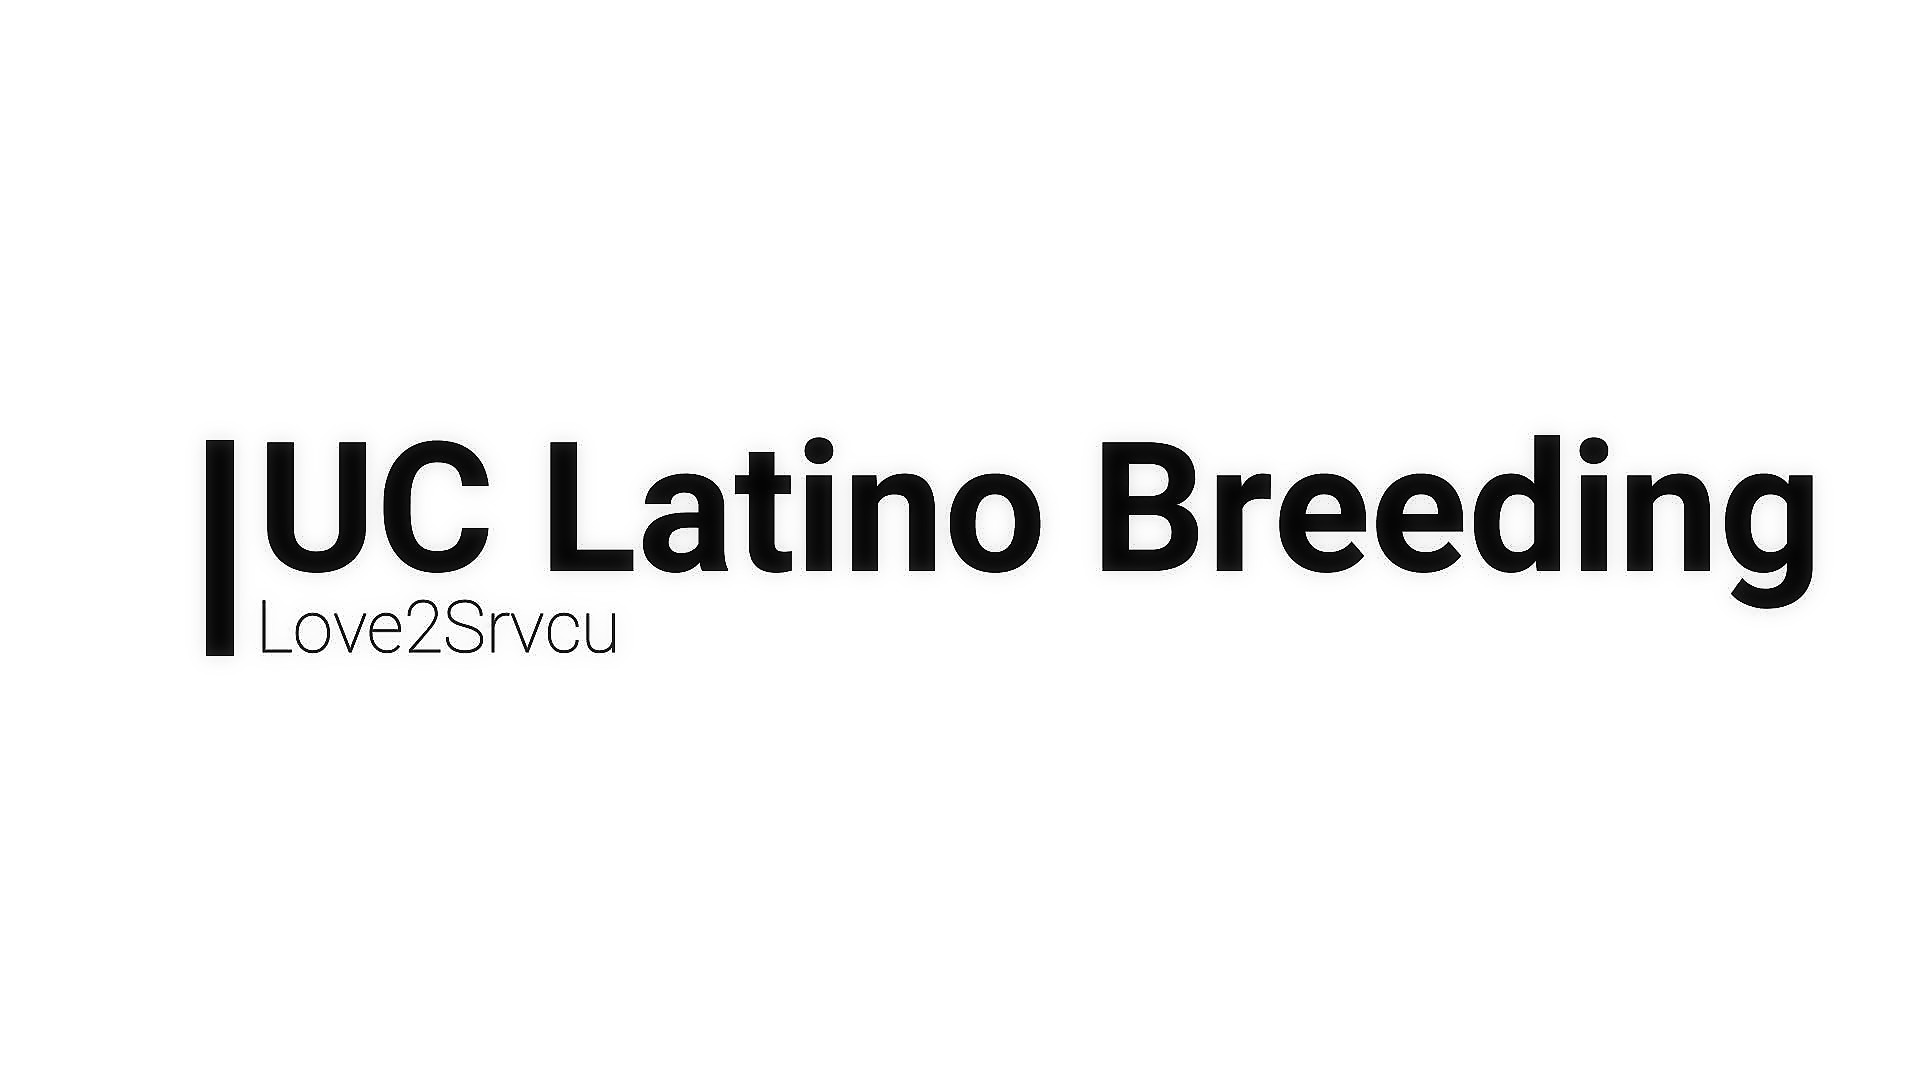 UC Latino Breeding